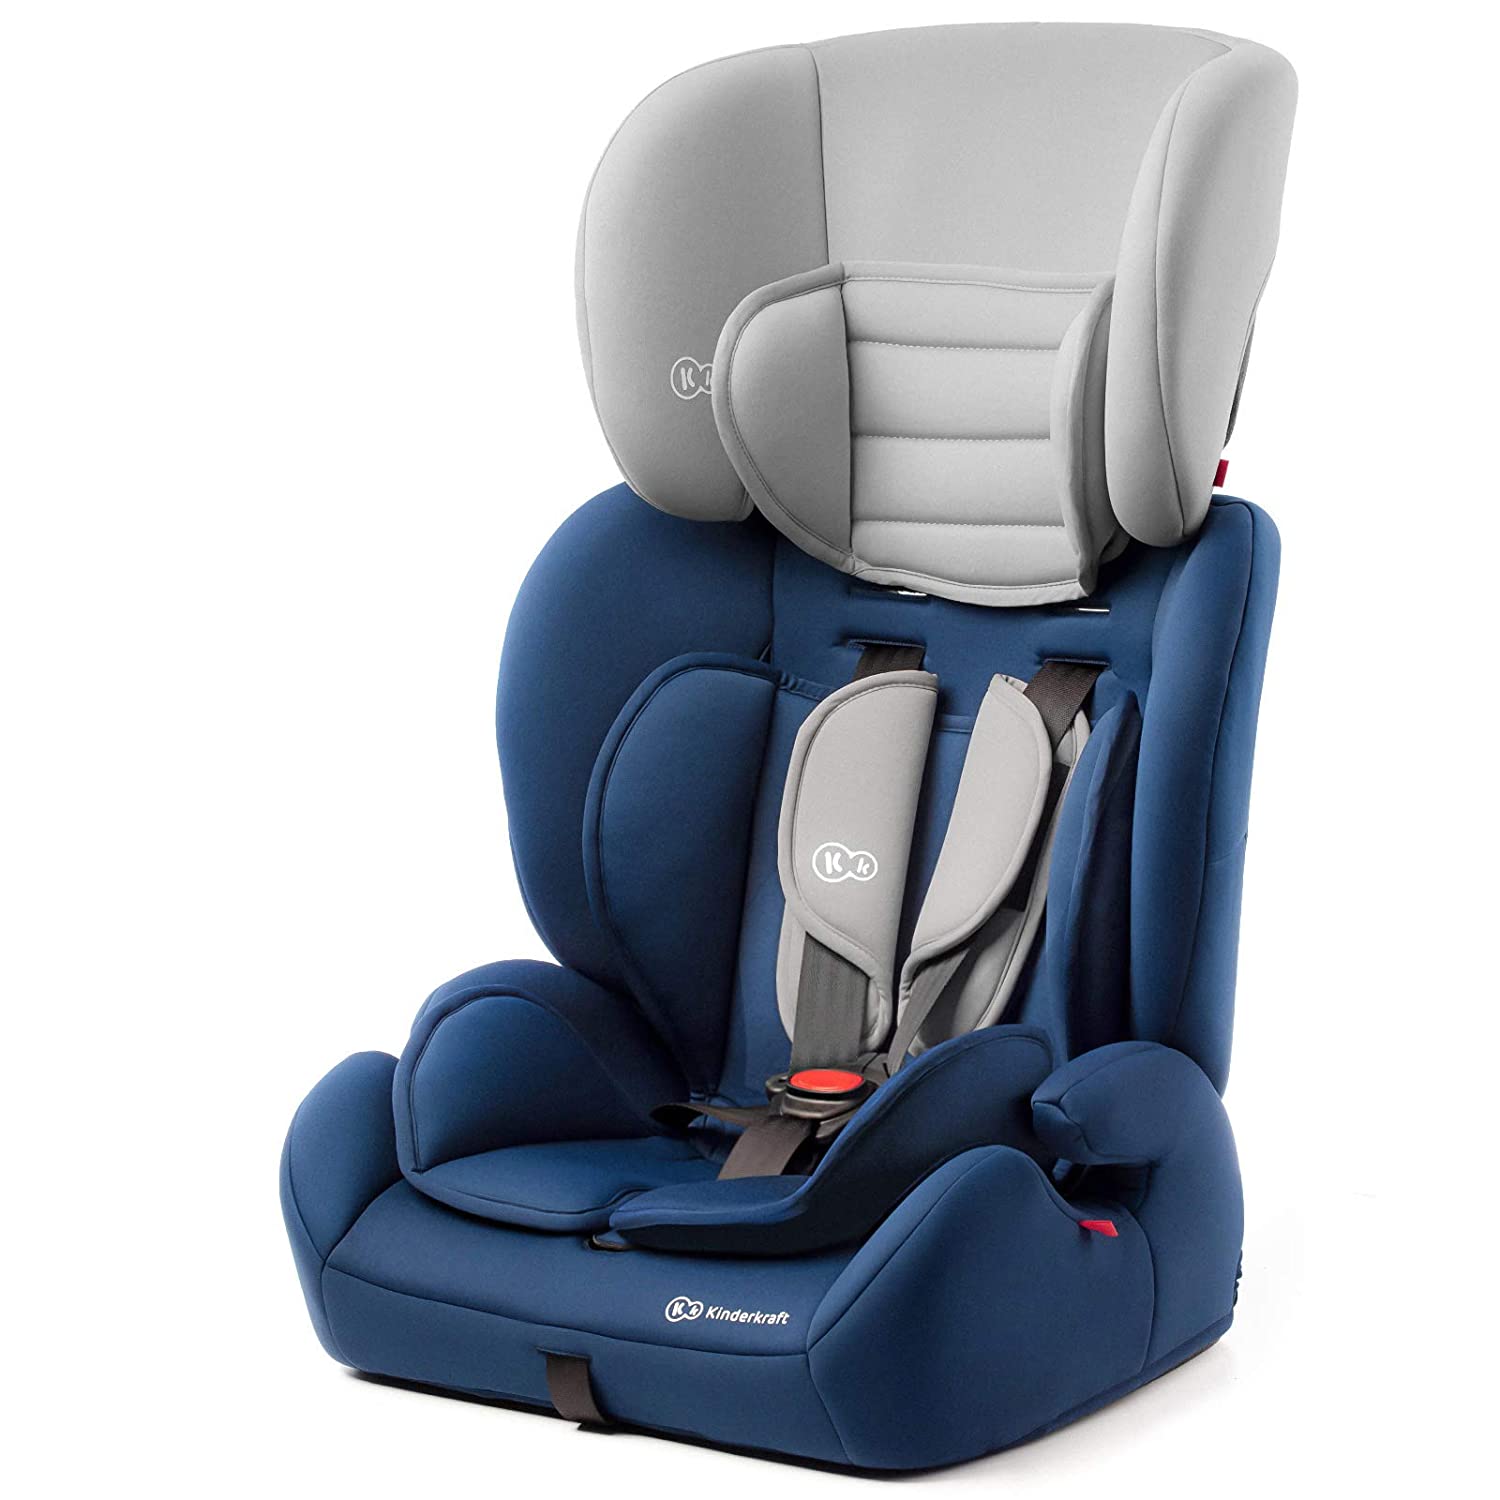 Kinderkraft Concept Child Car Seat Group 1/2/3 9-36 kg 5-Point Safety Belt Adjustable Headrest ECE R44/04 Blue